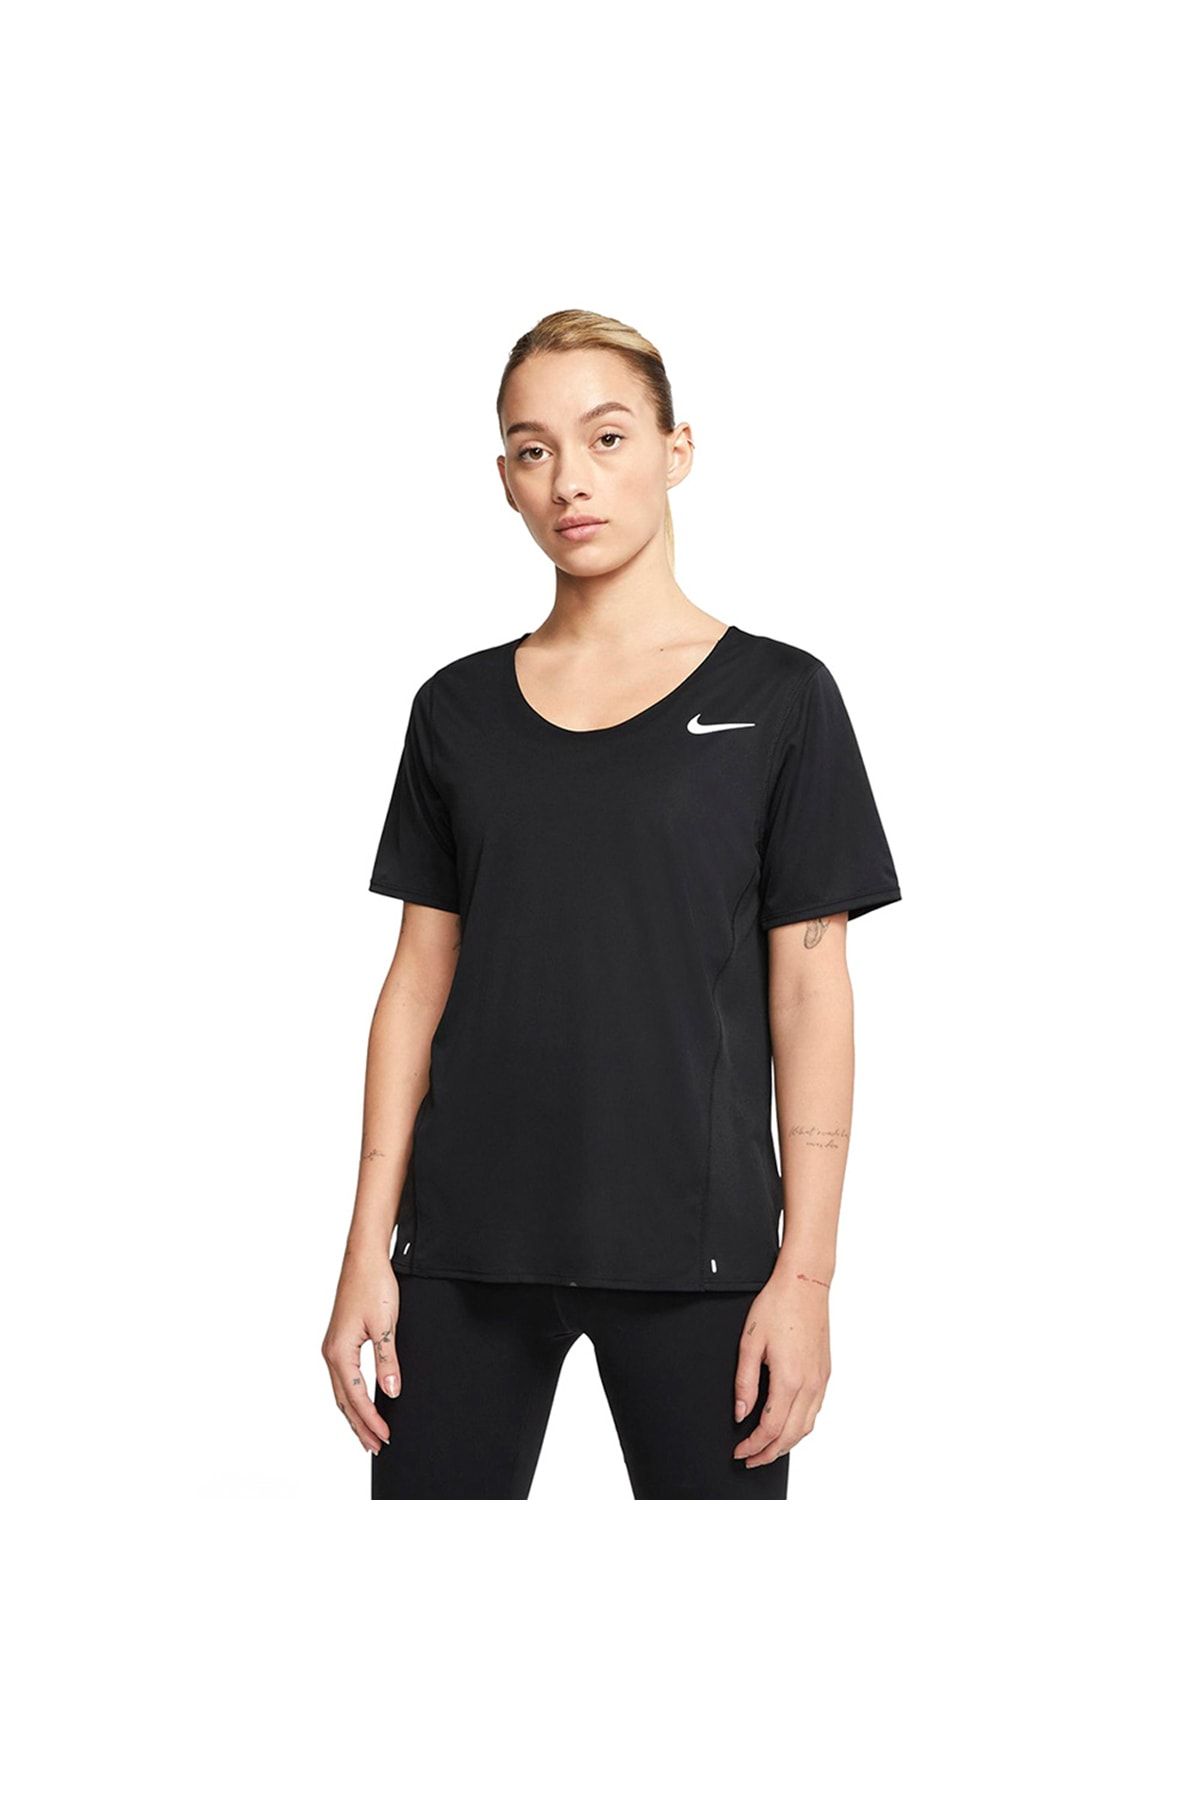 Nike Kadın Siyah Tişört Cj9444-010 City Sleek